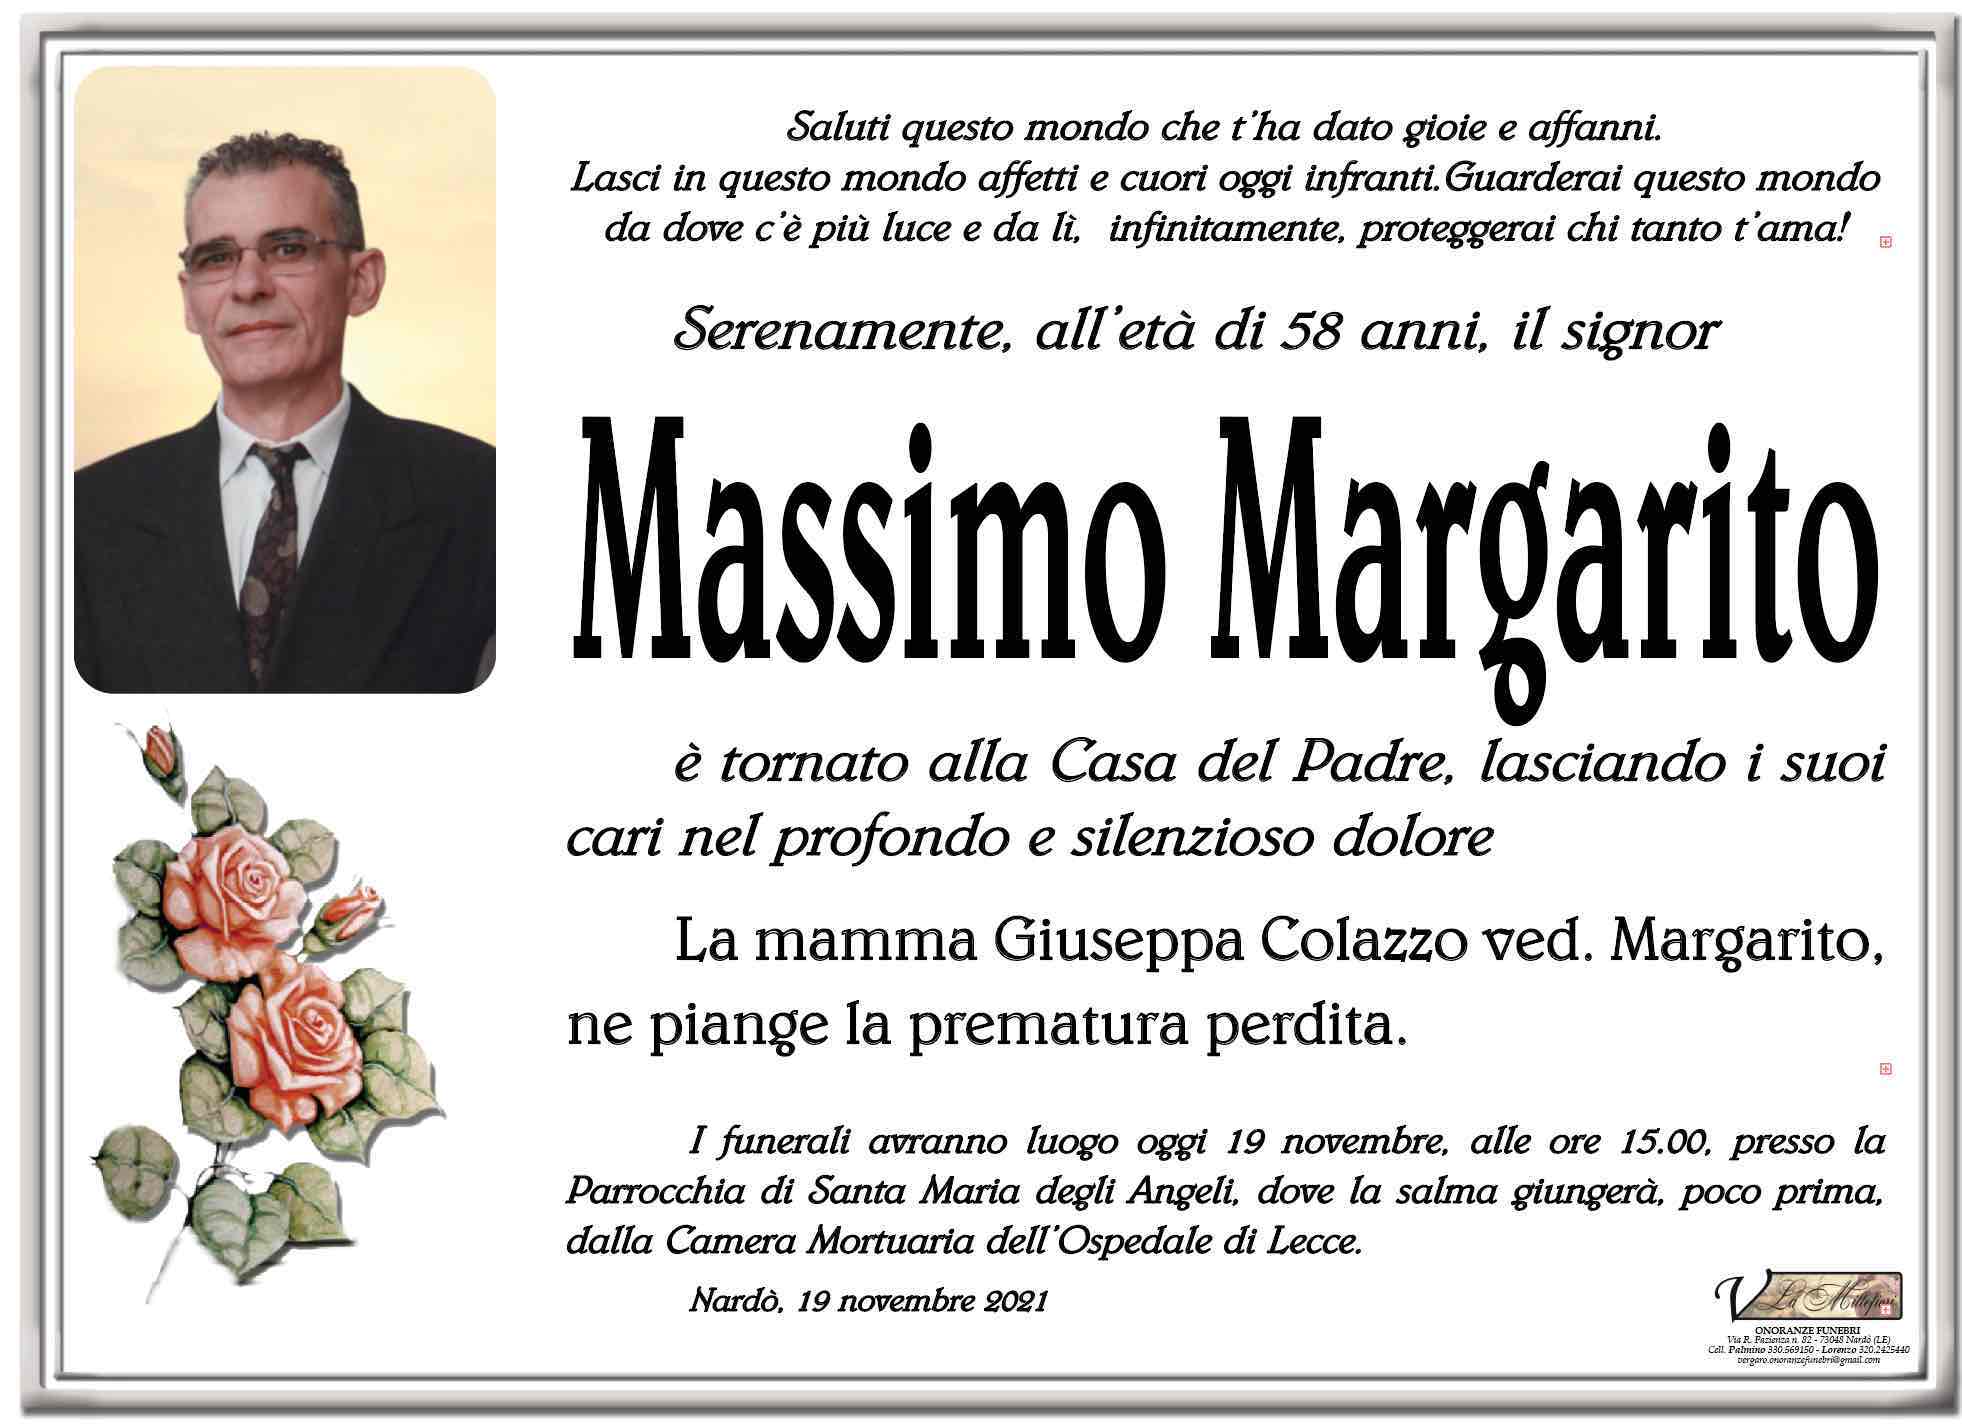 Massimo Margarito